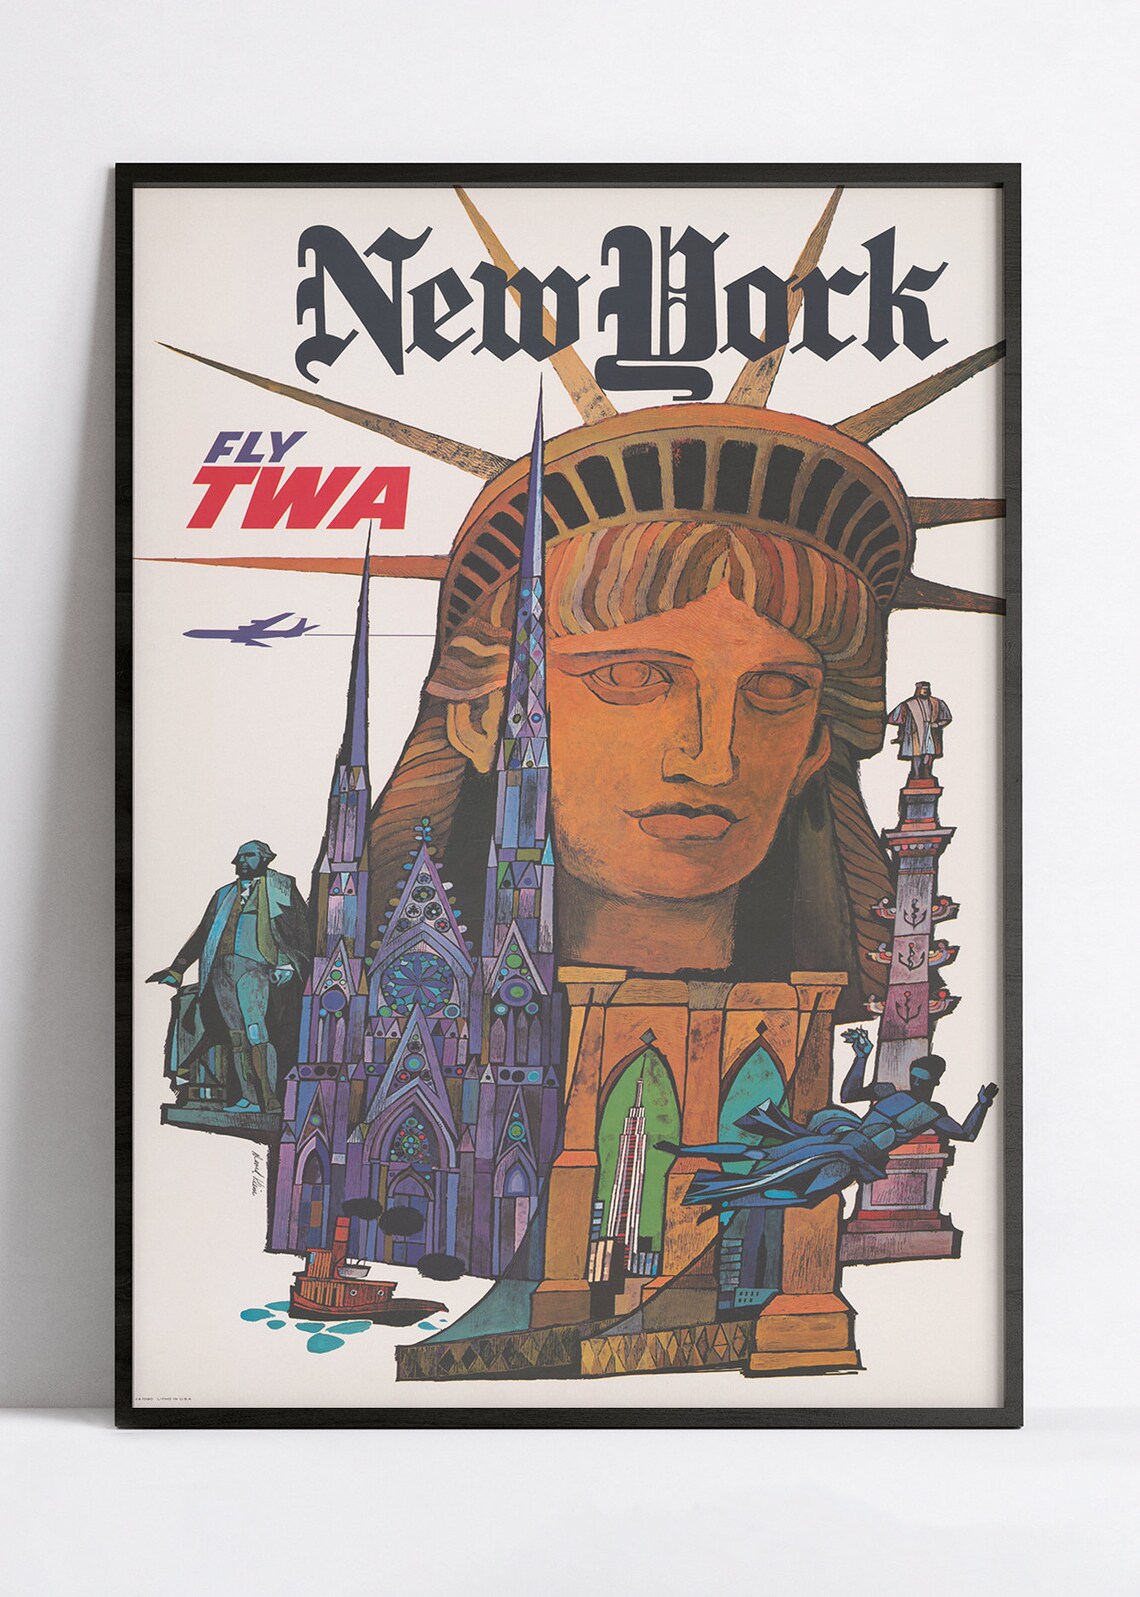 Affiche murale vintage "New York" - TWA  - Haute Définition - papier mat 230gr/m²